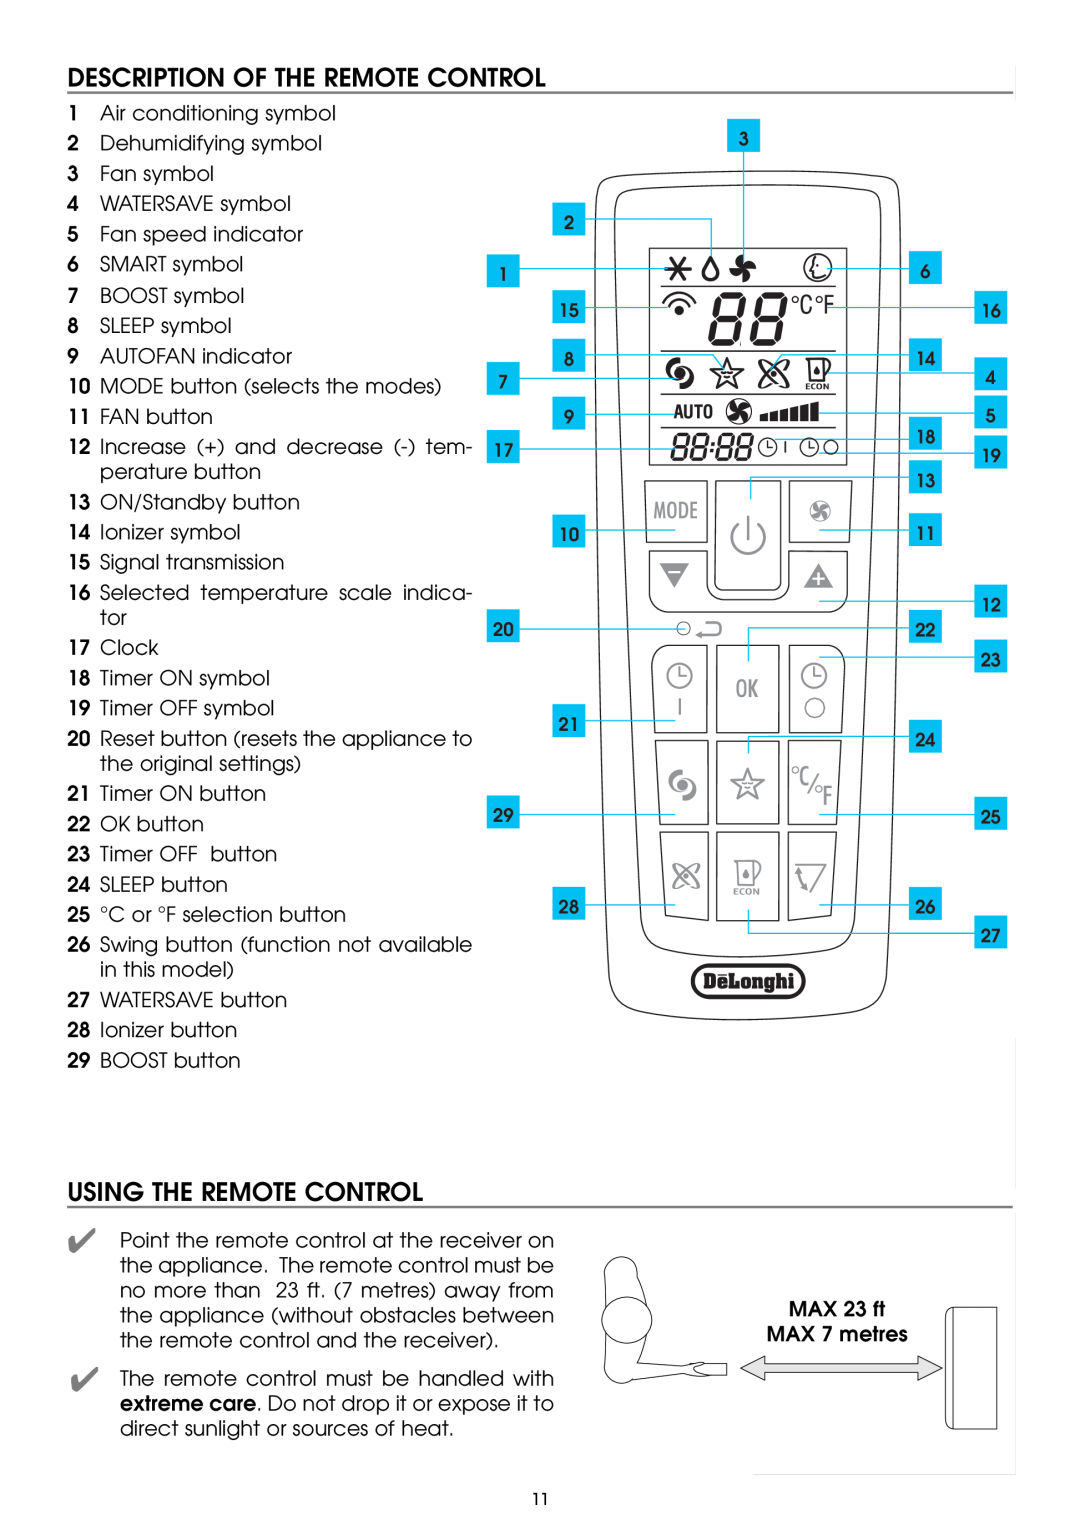 DeLonghi PAC W130E specifications Description Of The Remote Control, Using The Remote Control 